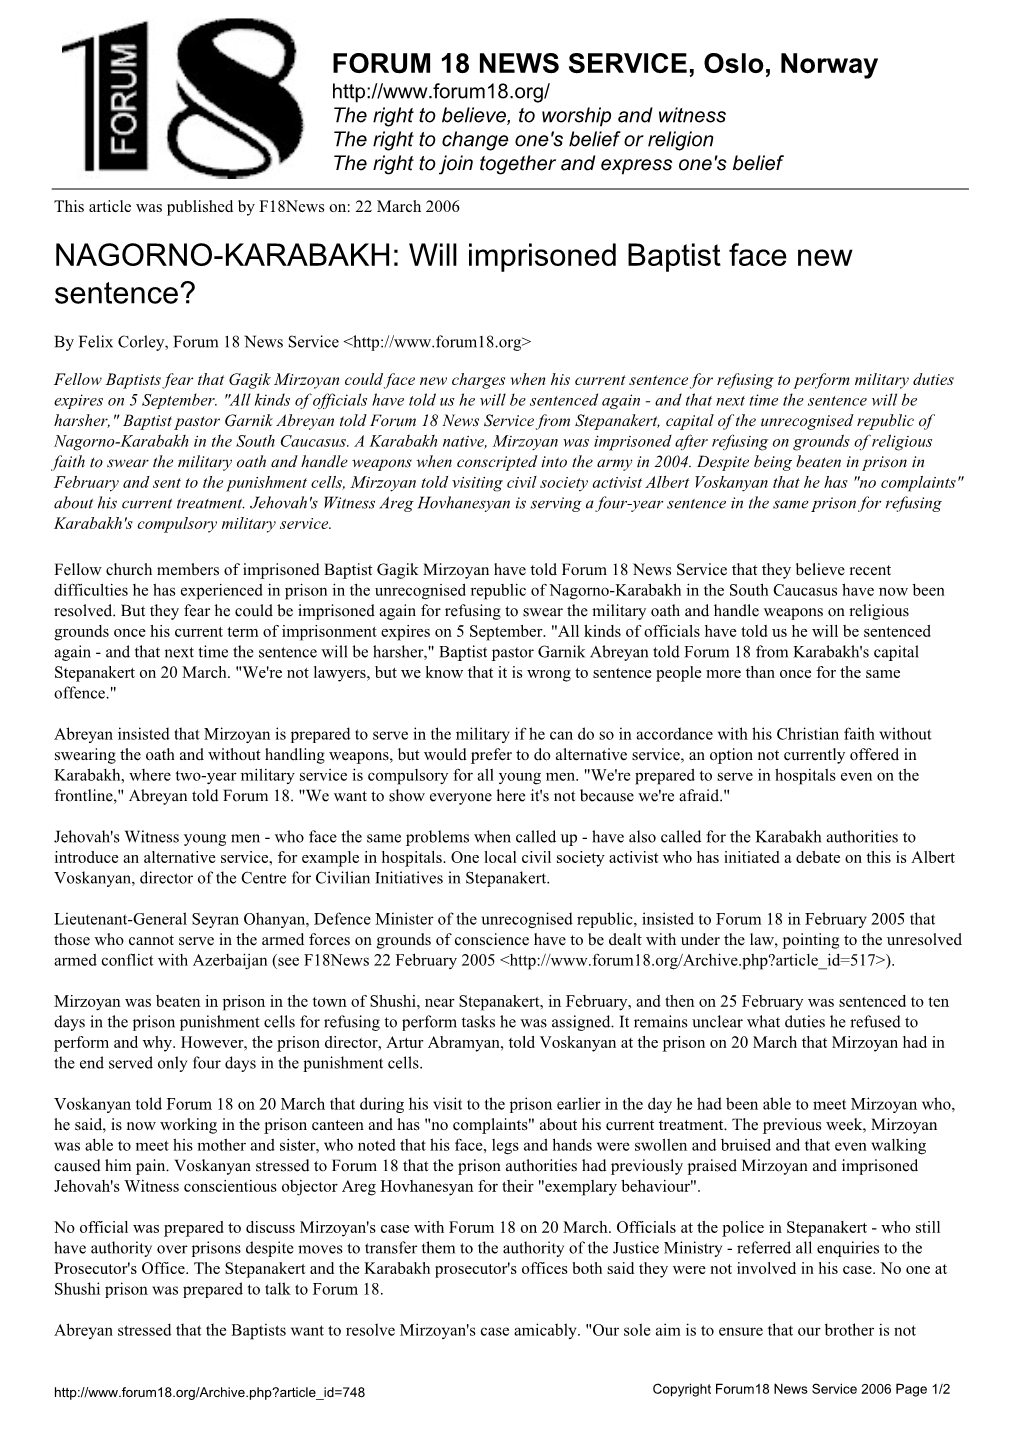 NAGORNO-KARABAKH: Will Imprisoned Baptist Face New Sentence?